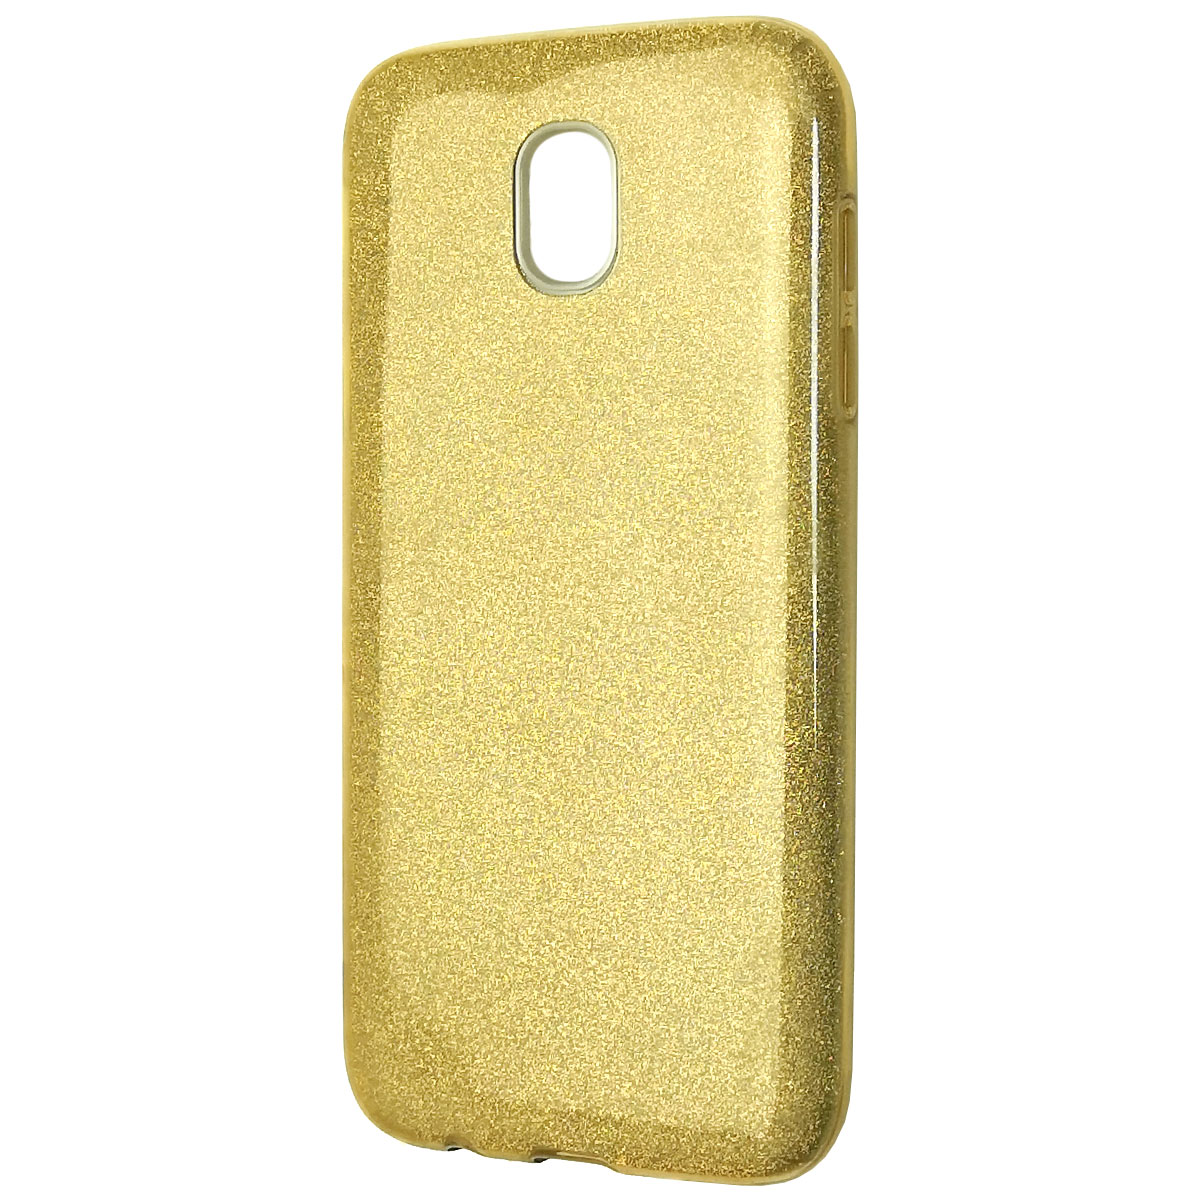 Чехол накладка для SAMSUNG Galaxy J5 2017 (SM-J530), силикон, блестки, цвет золотистый